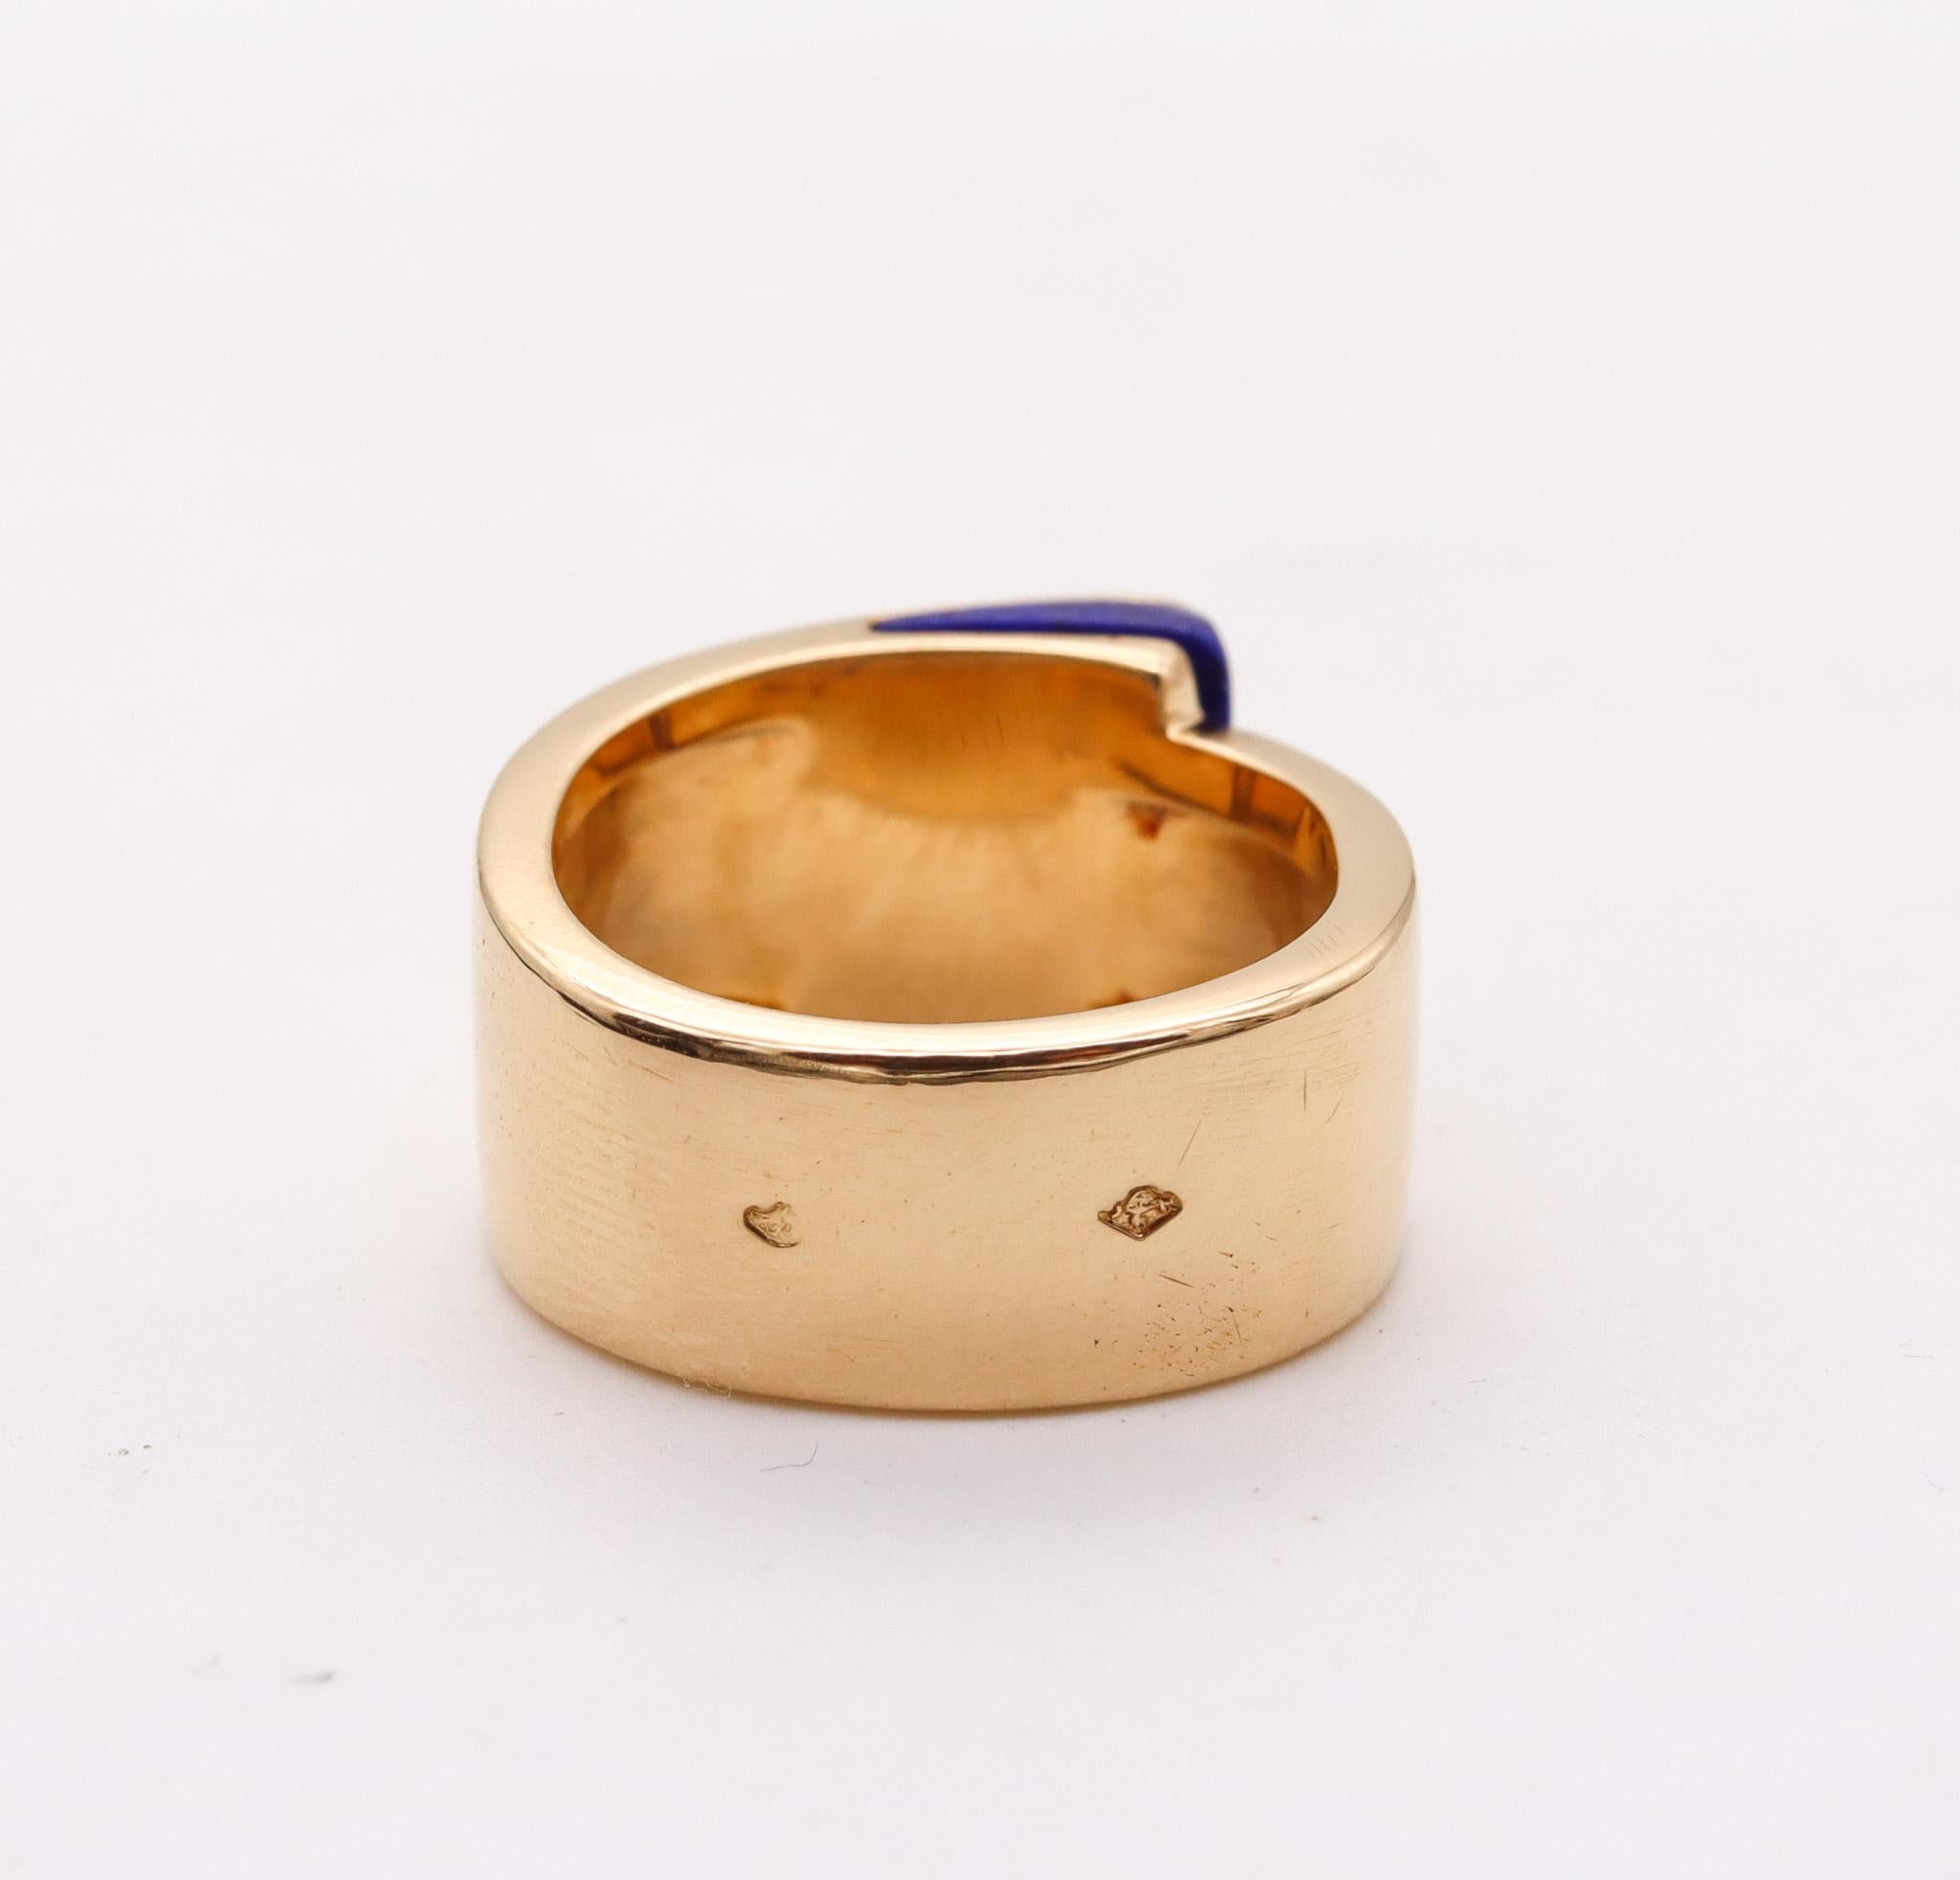 Hermes Paris Candy H Ring in 18 Karat Yellow Gold with Lapis Lazuli 1